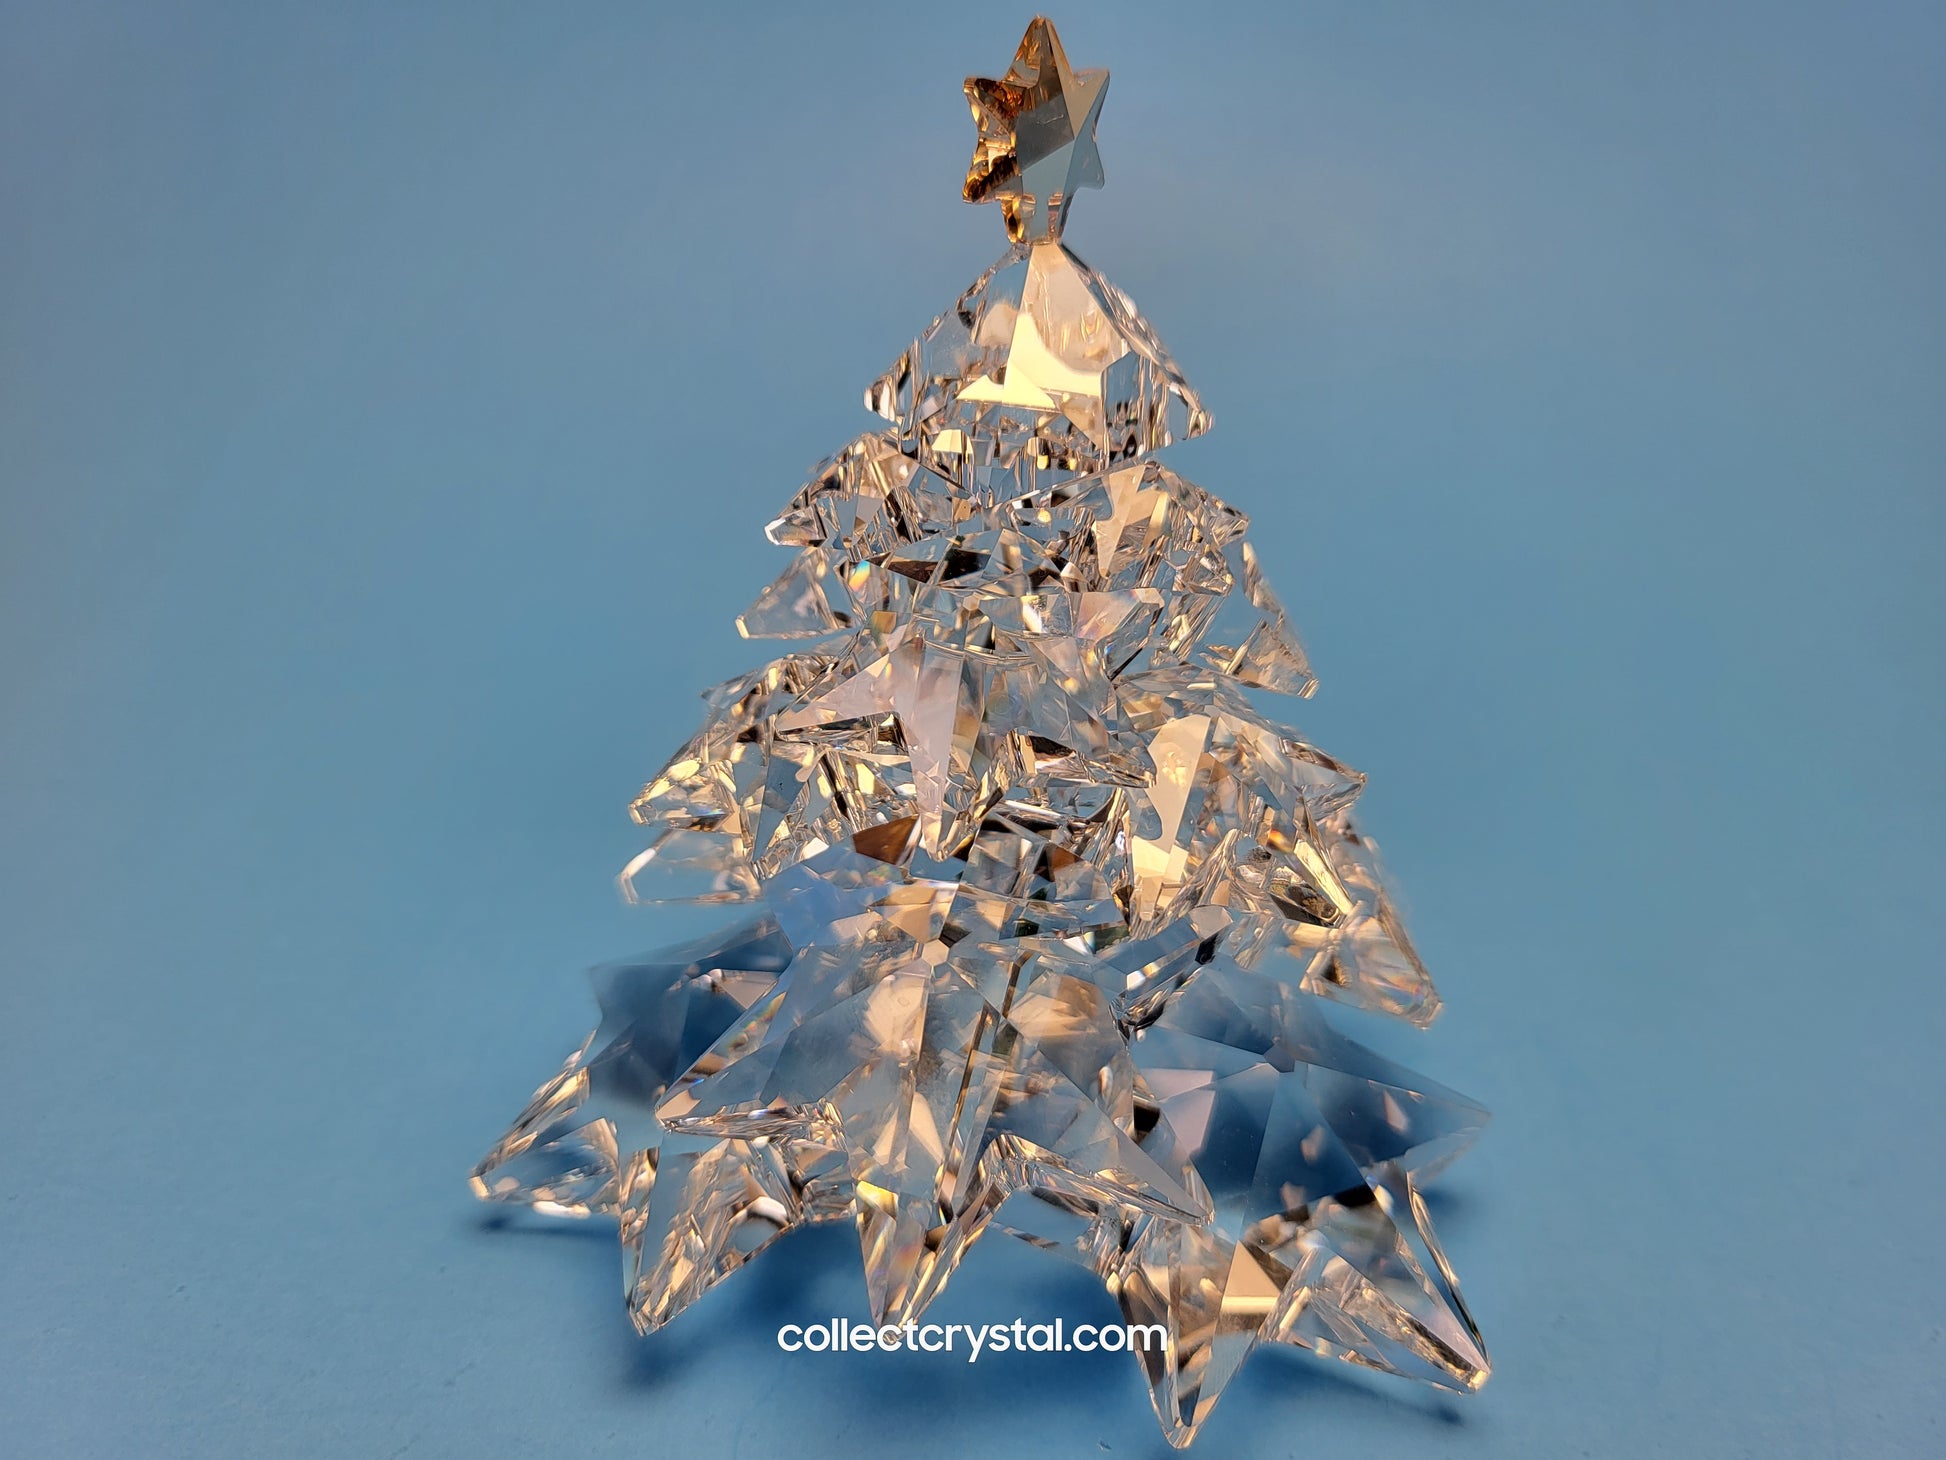 CHRISTMAS TREE SHINING STAR 1139998 – Collect Crystal